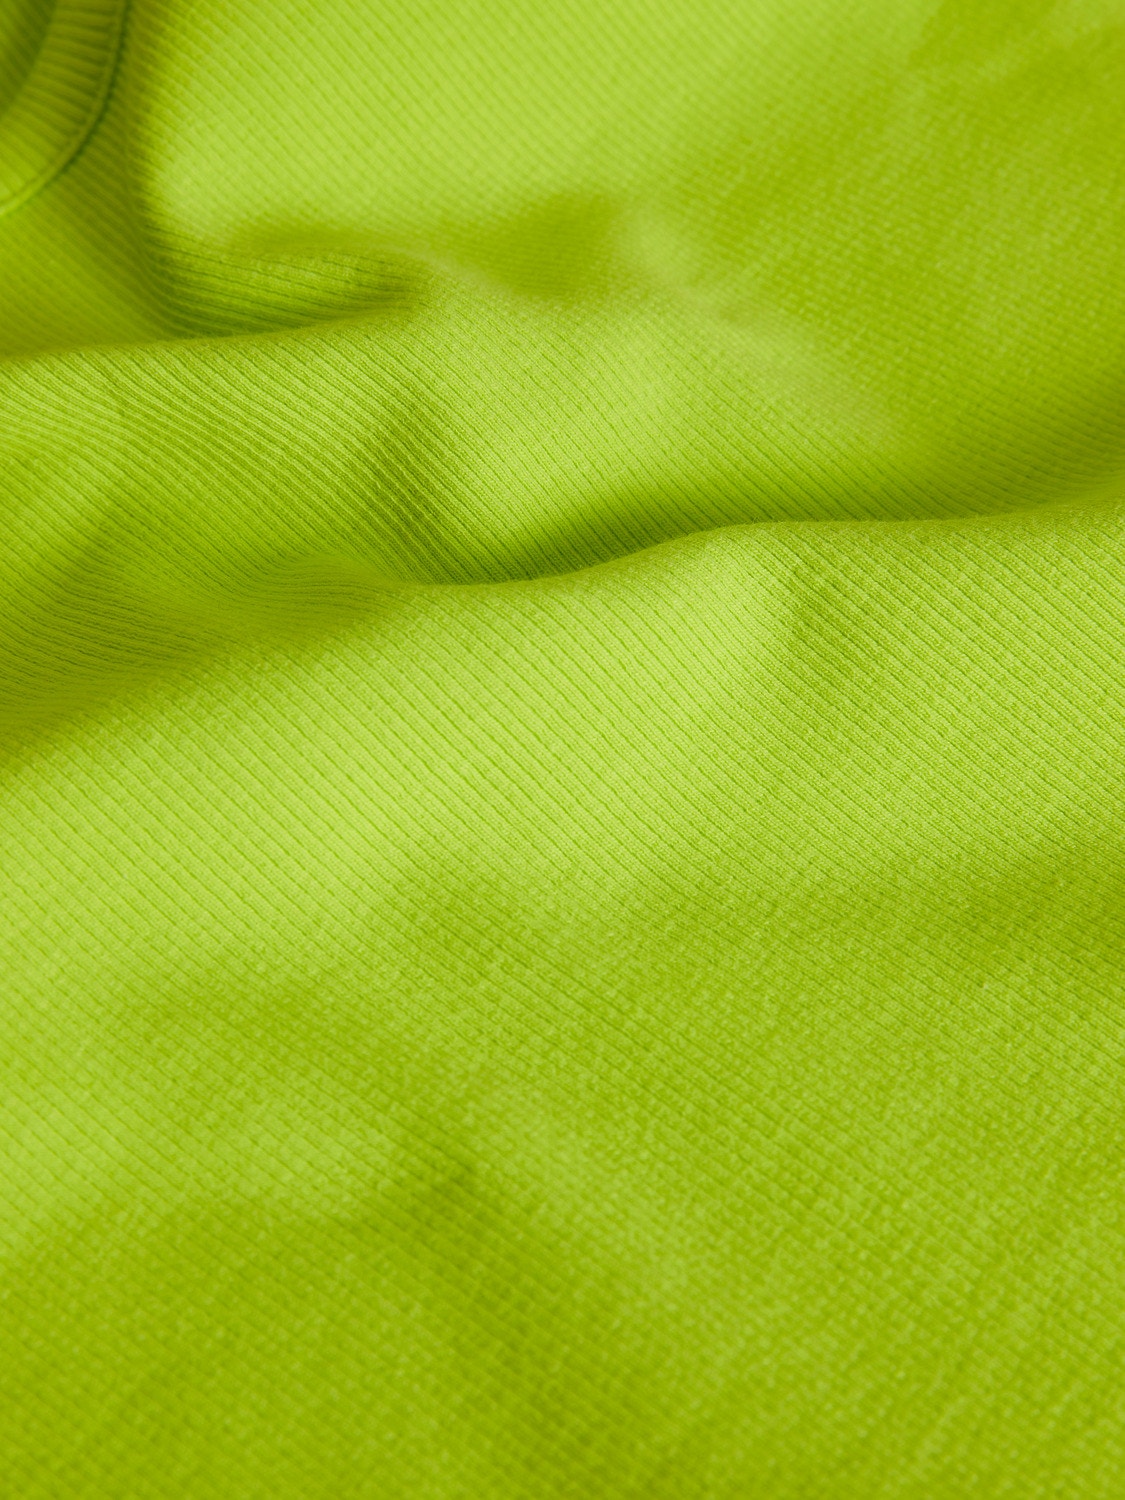 JJXX JXFLORIE T-shirt -Lime Punch - 12217164